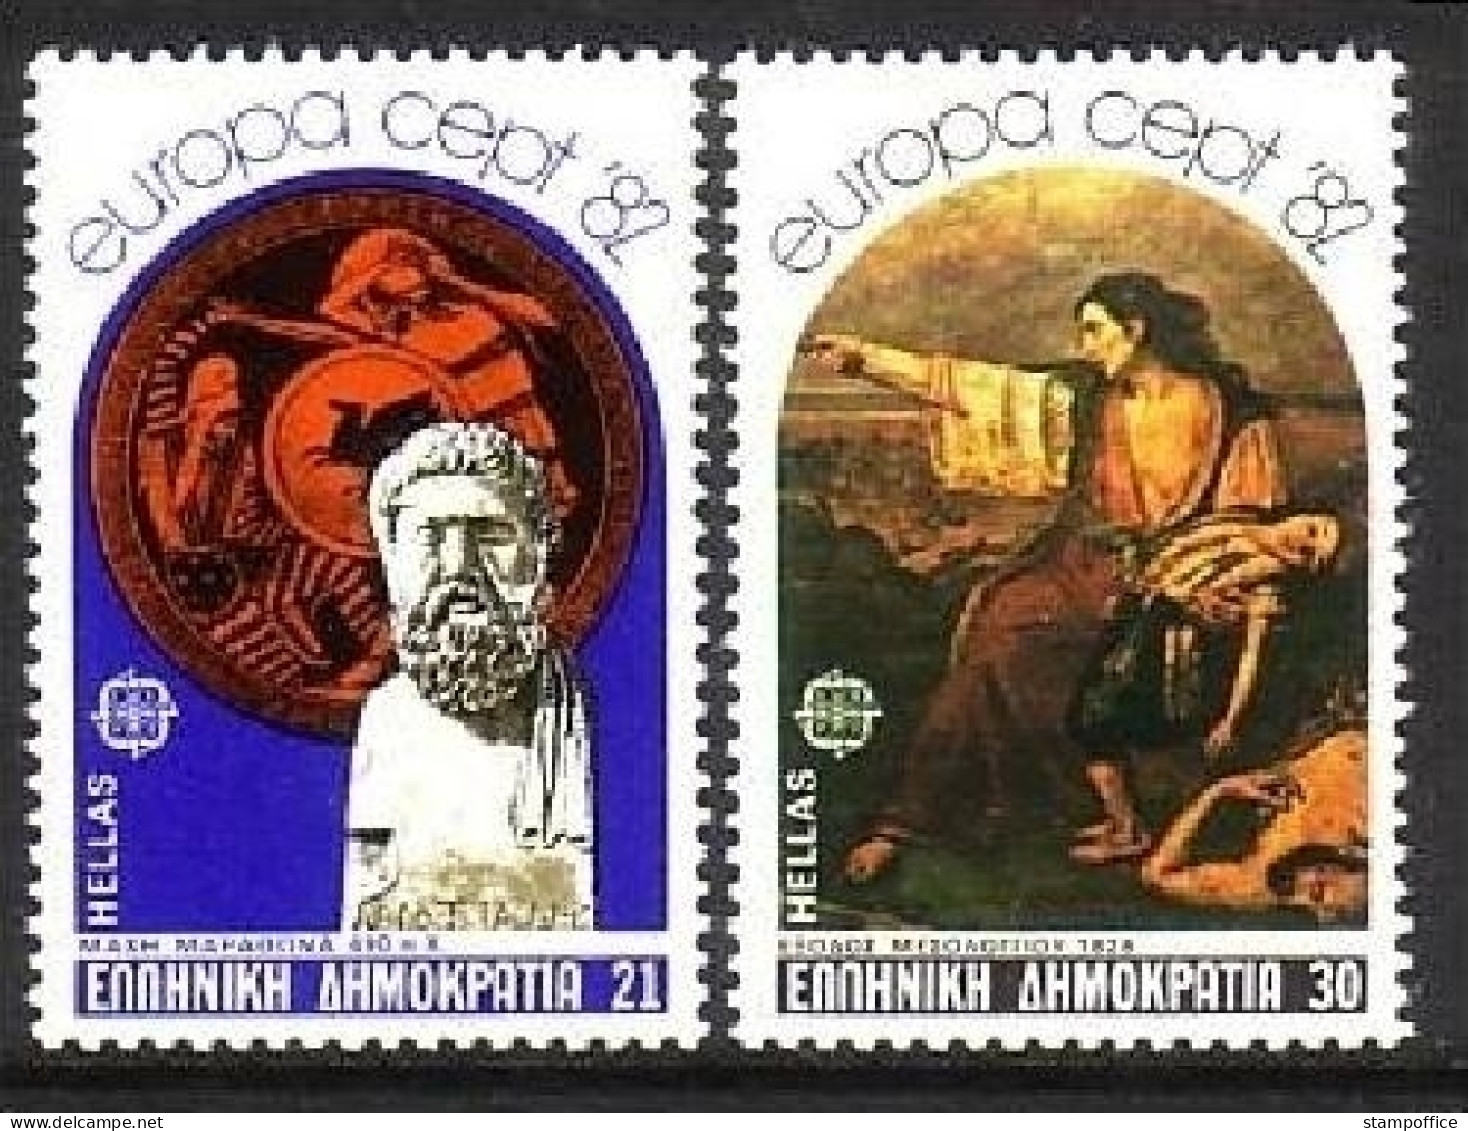 GRIECHENLAND MI-NR. 1481-1482 POSTFRISCH(MINT) EUROPA 1982 - HISTORISCHE EREIGNISSE - 1982